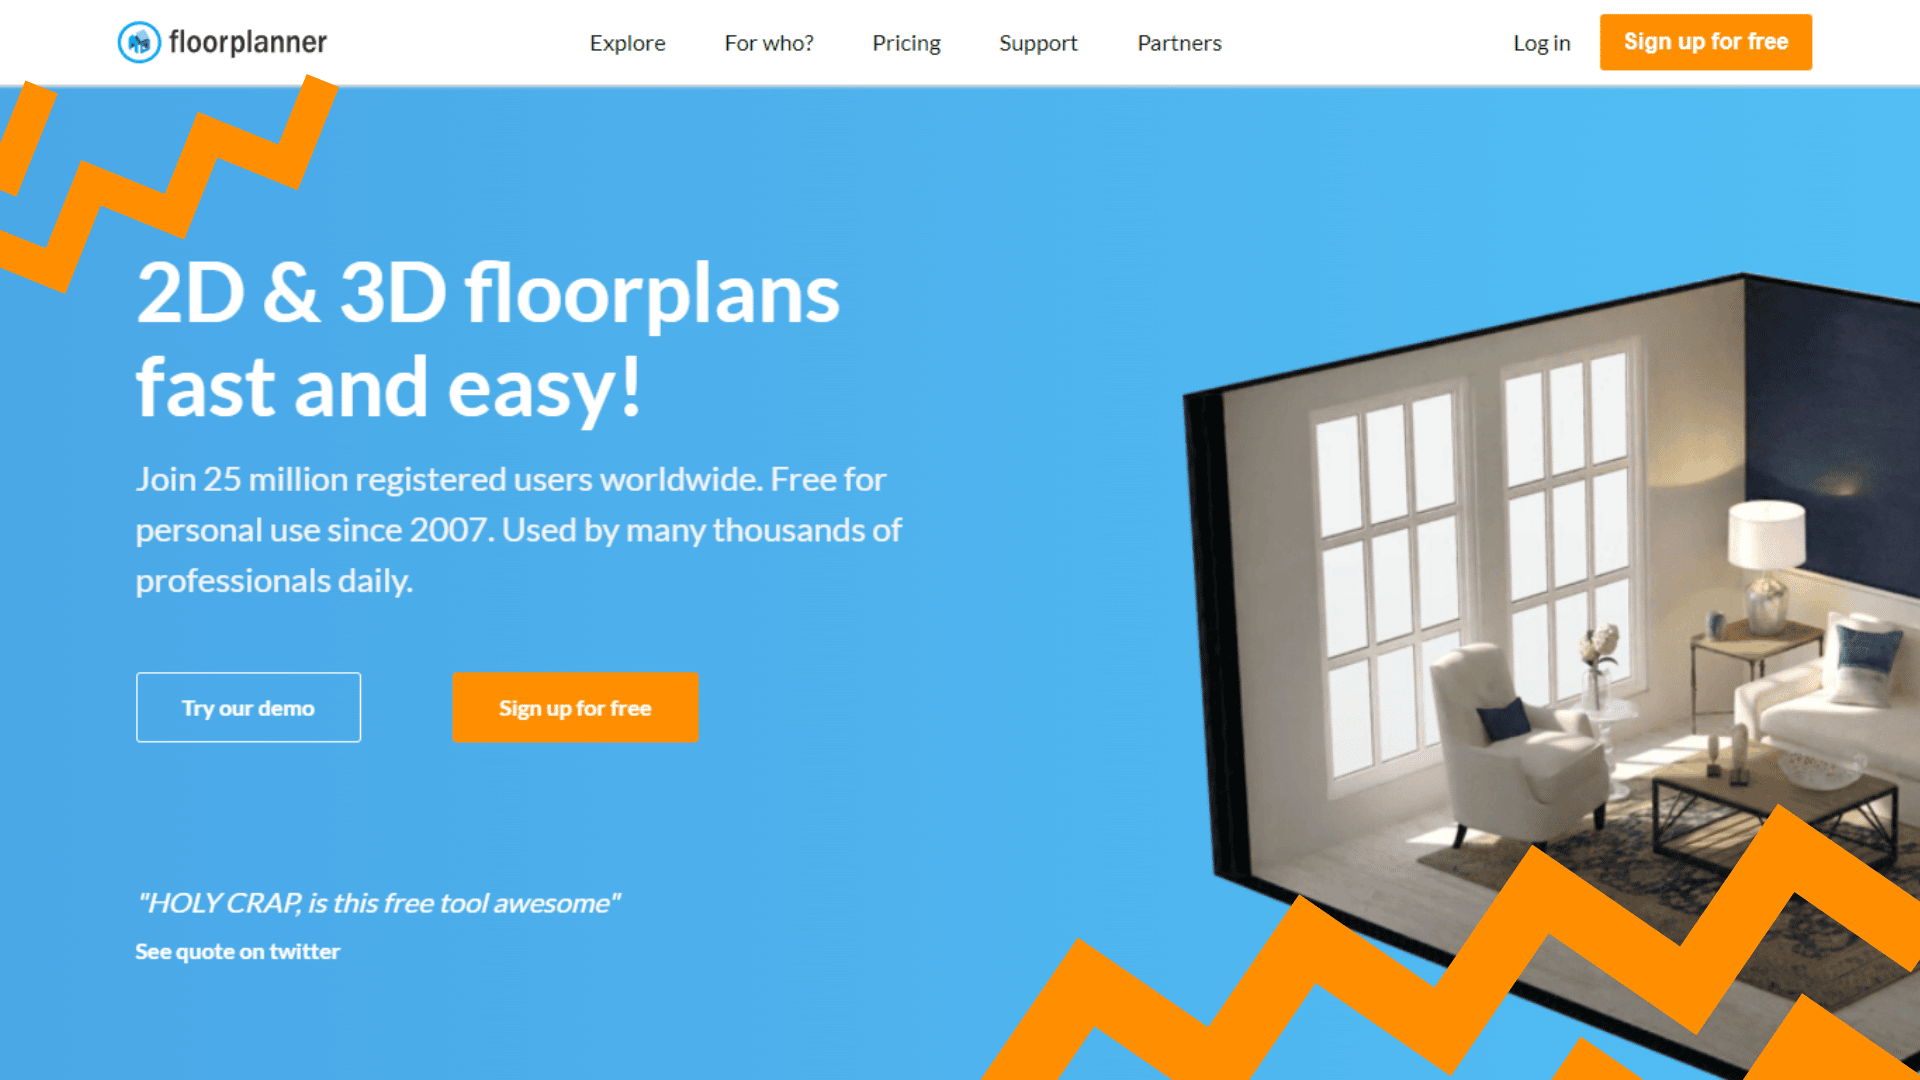 Floorplanner Features